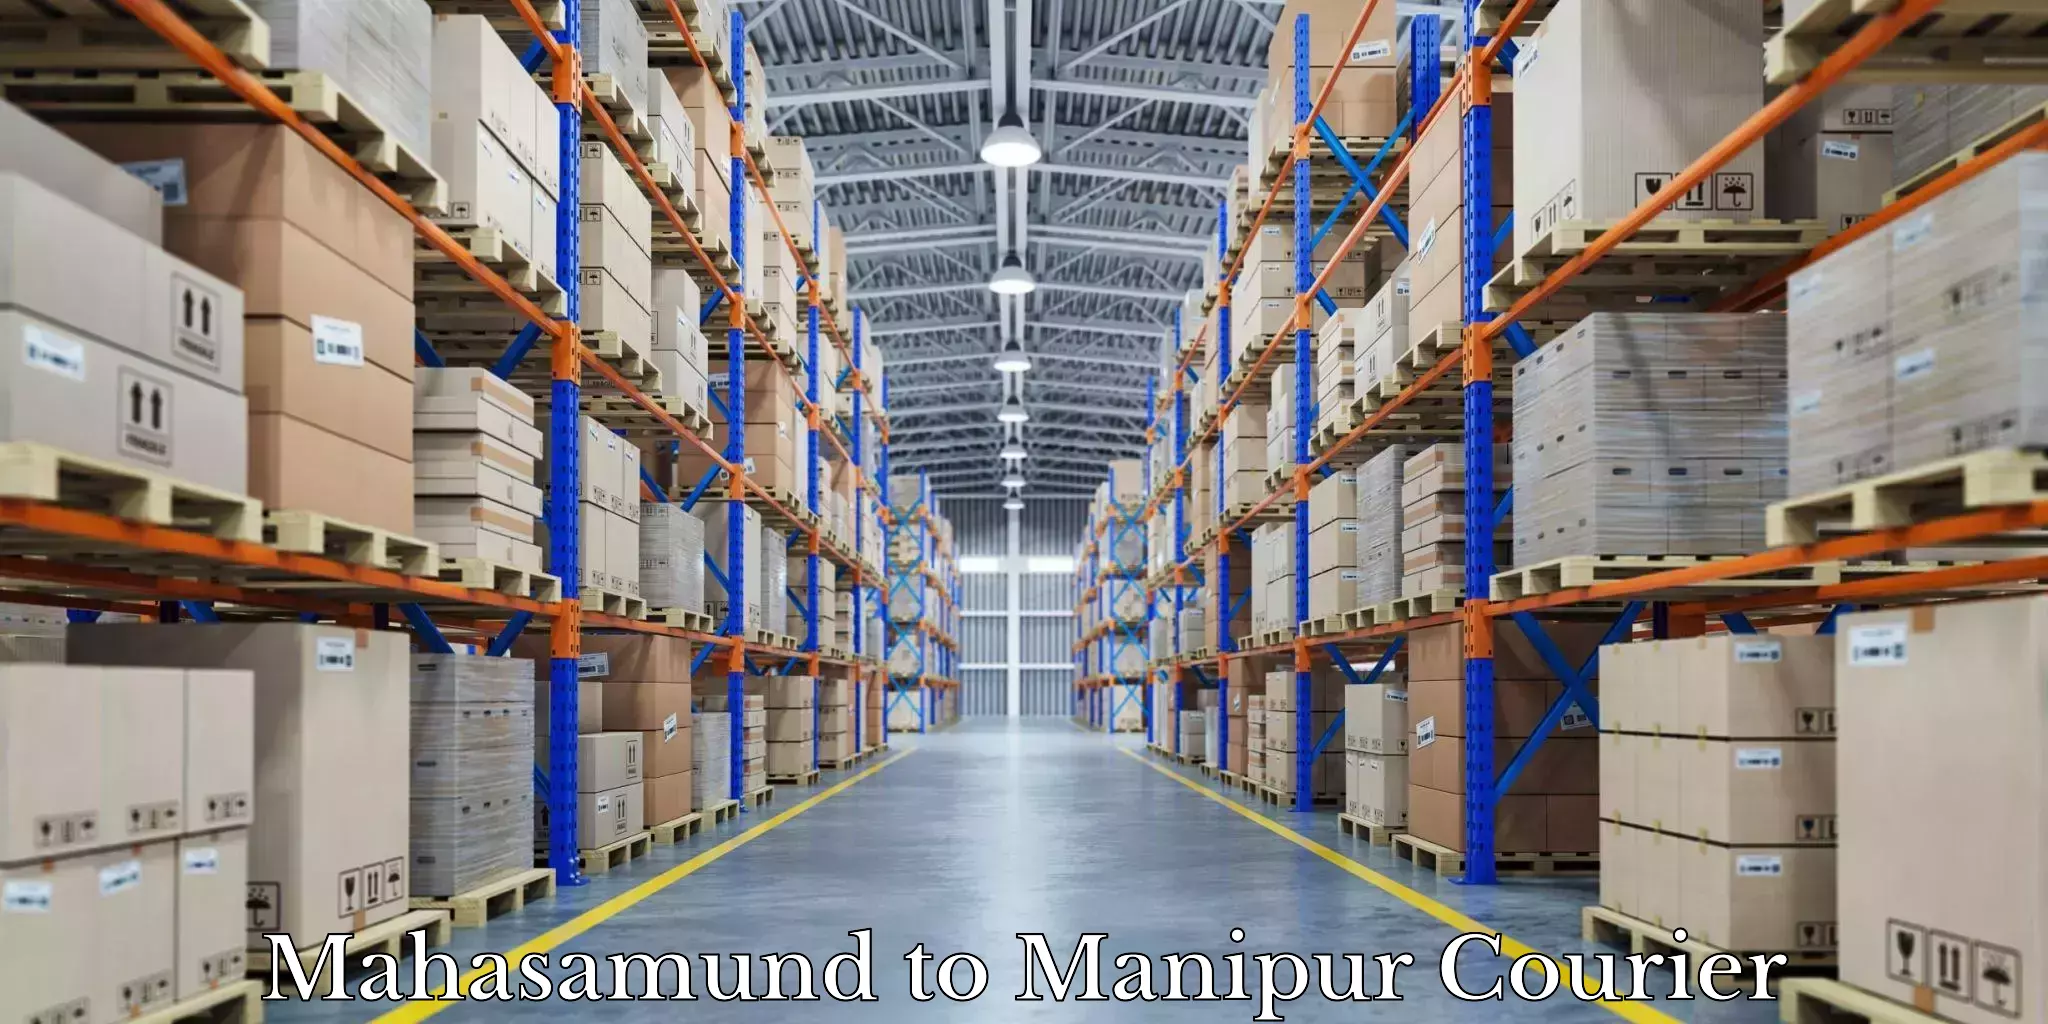 Furniture moving experts Mahasamund to Manipur